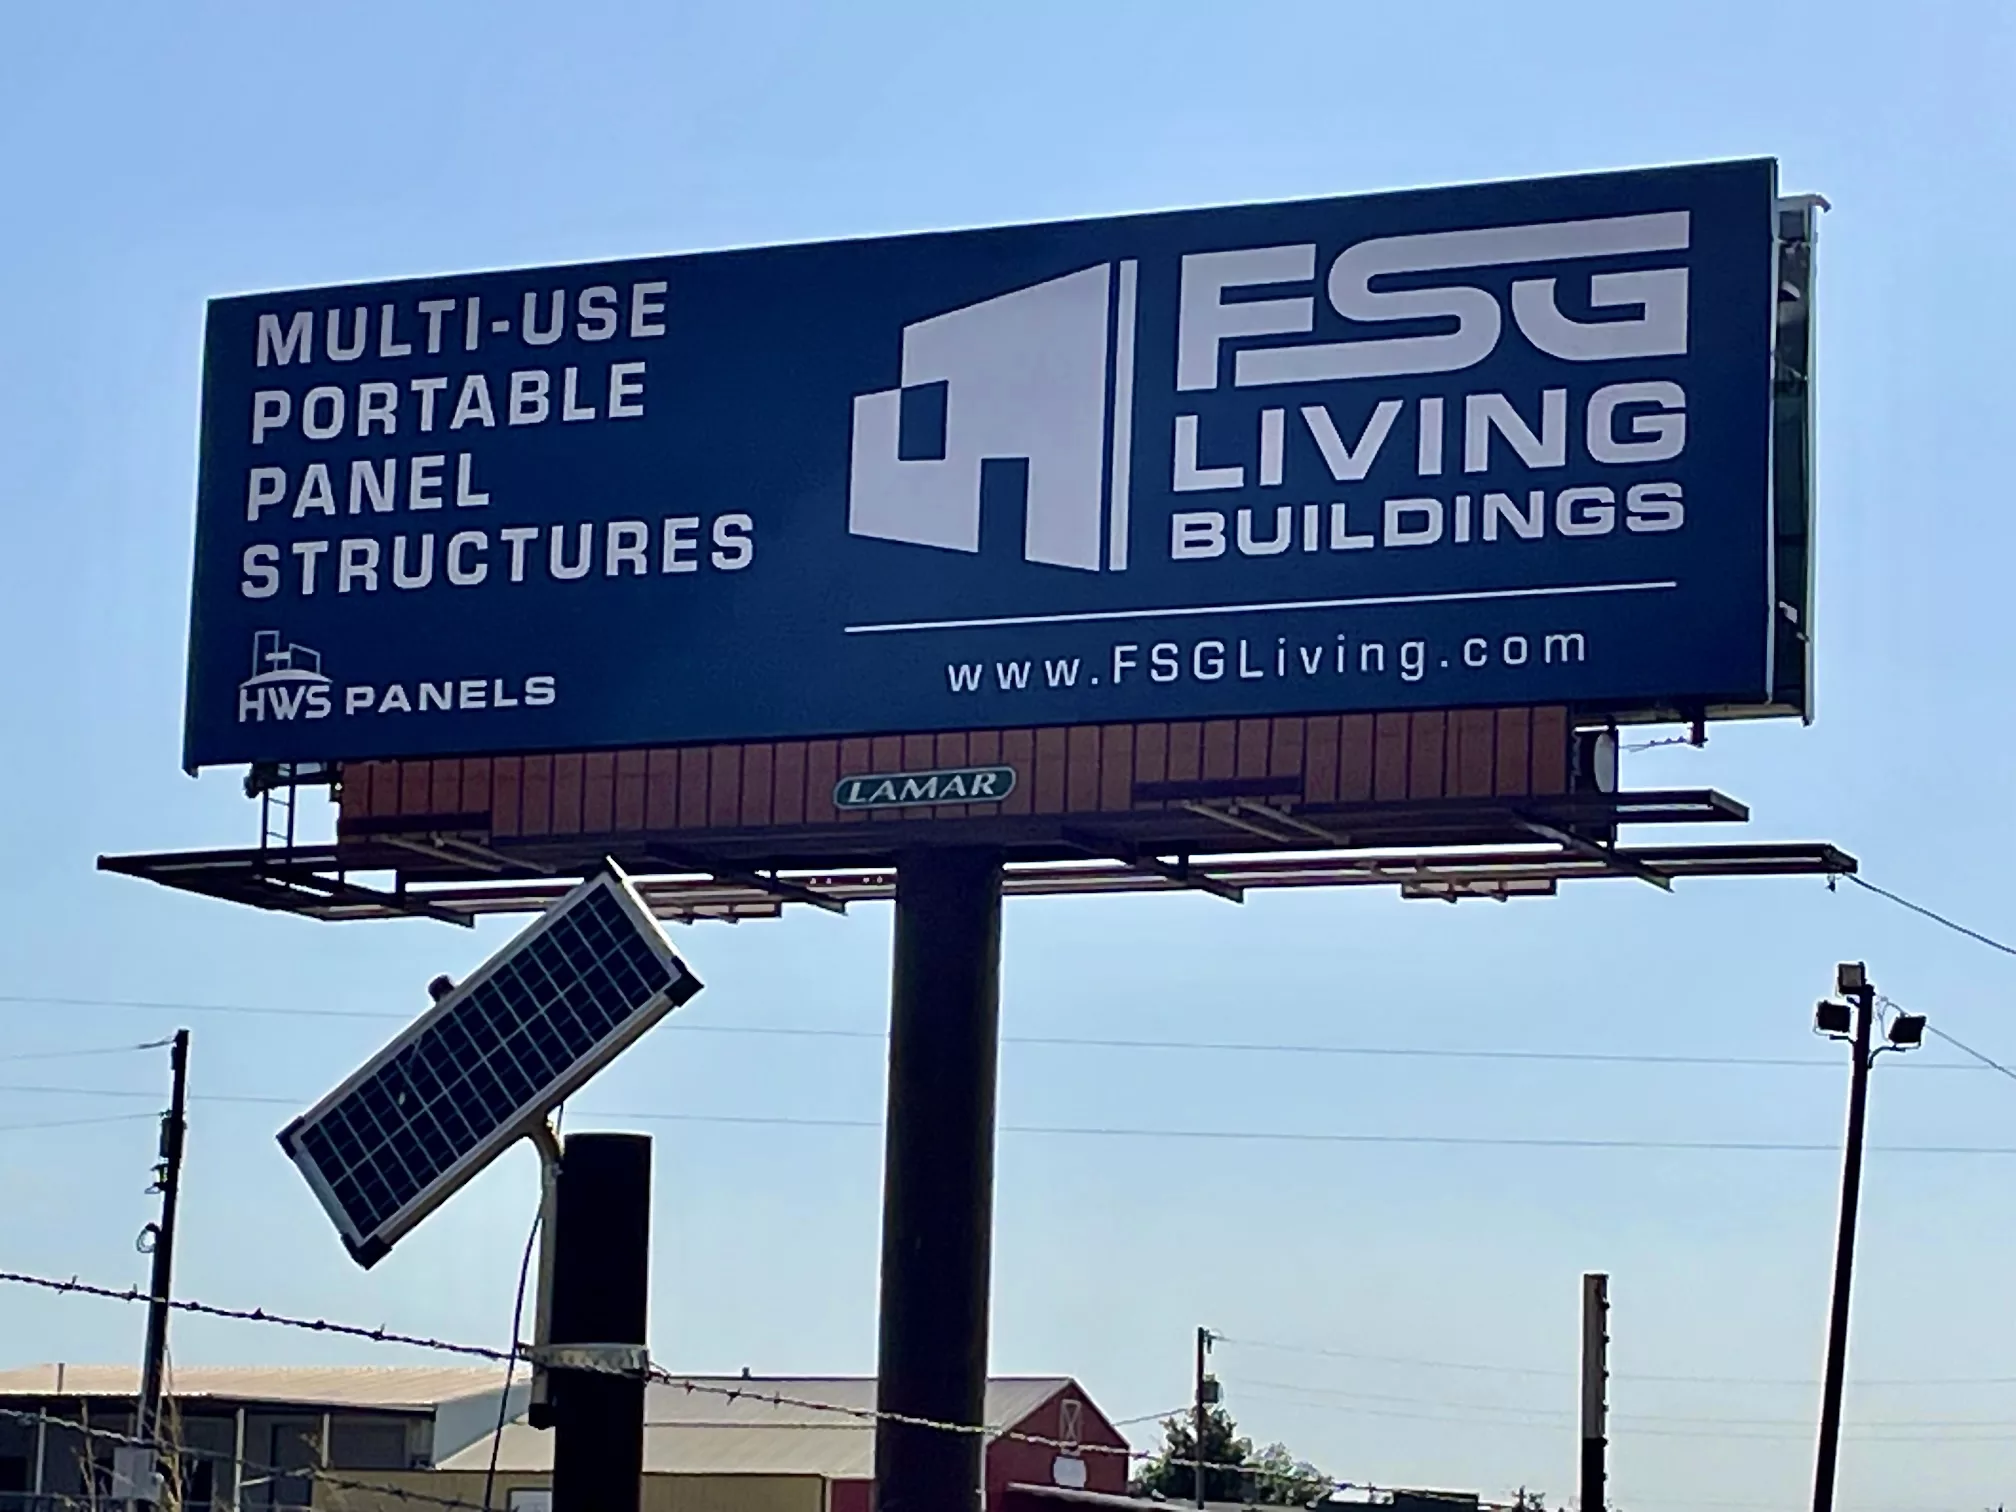 FSG Living Buildings, HWS Panels, 6586 East Interstate 20